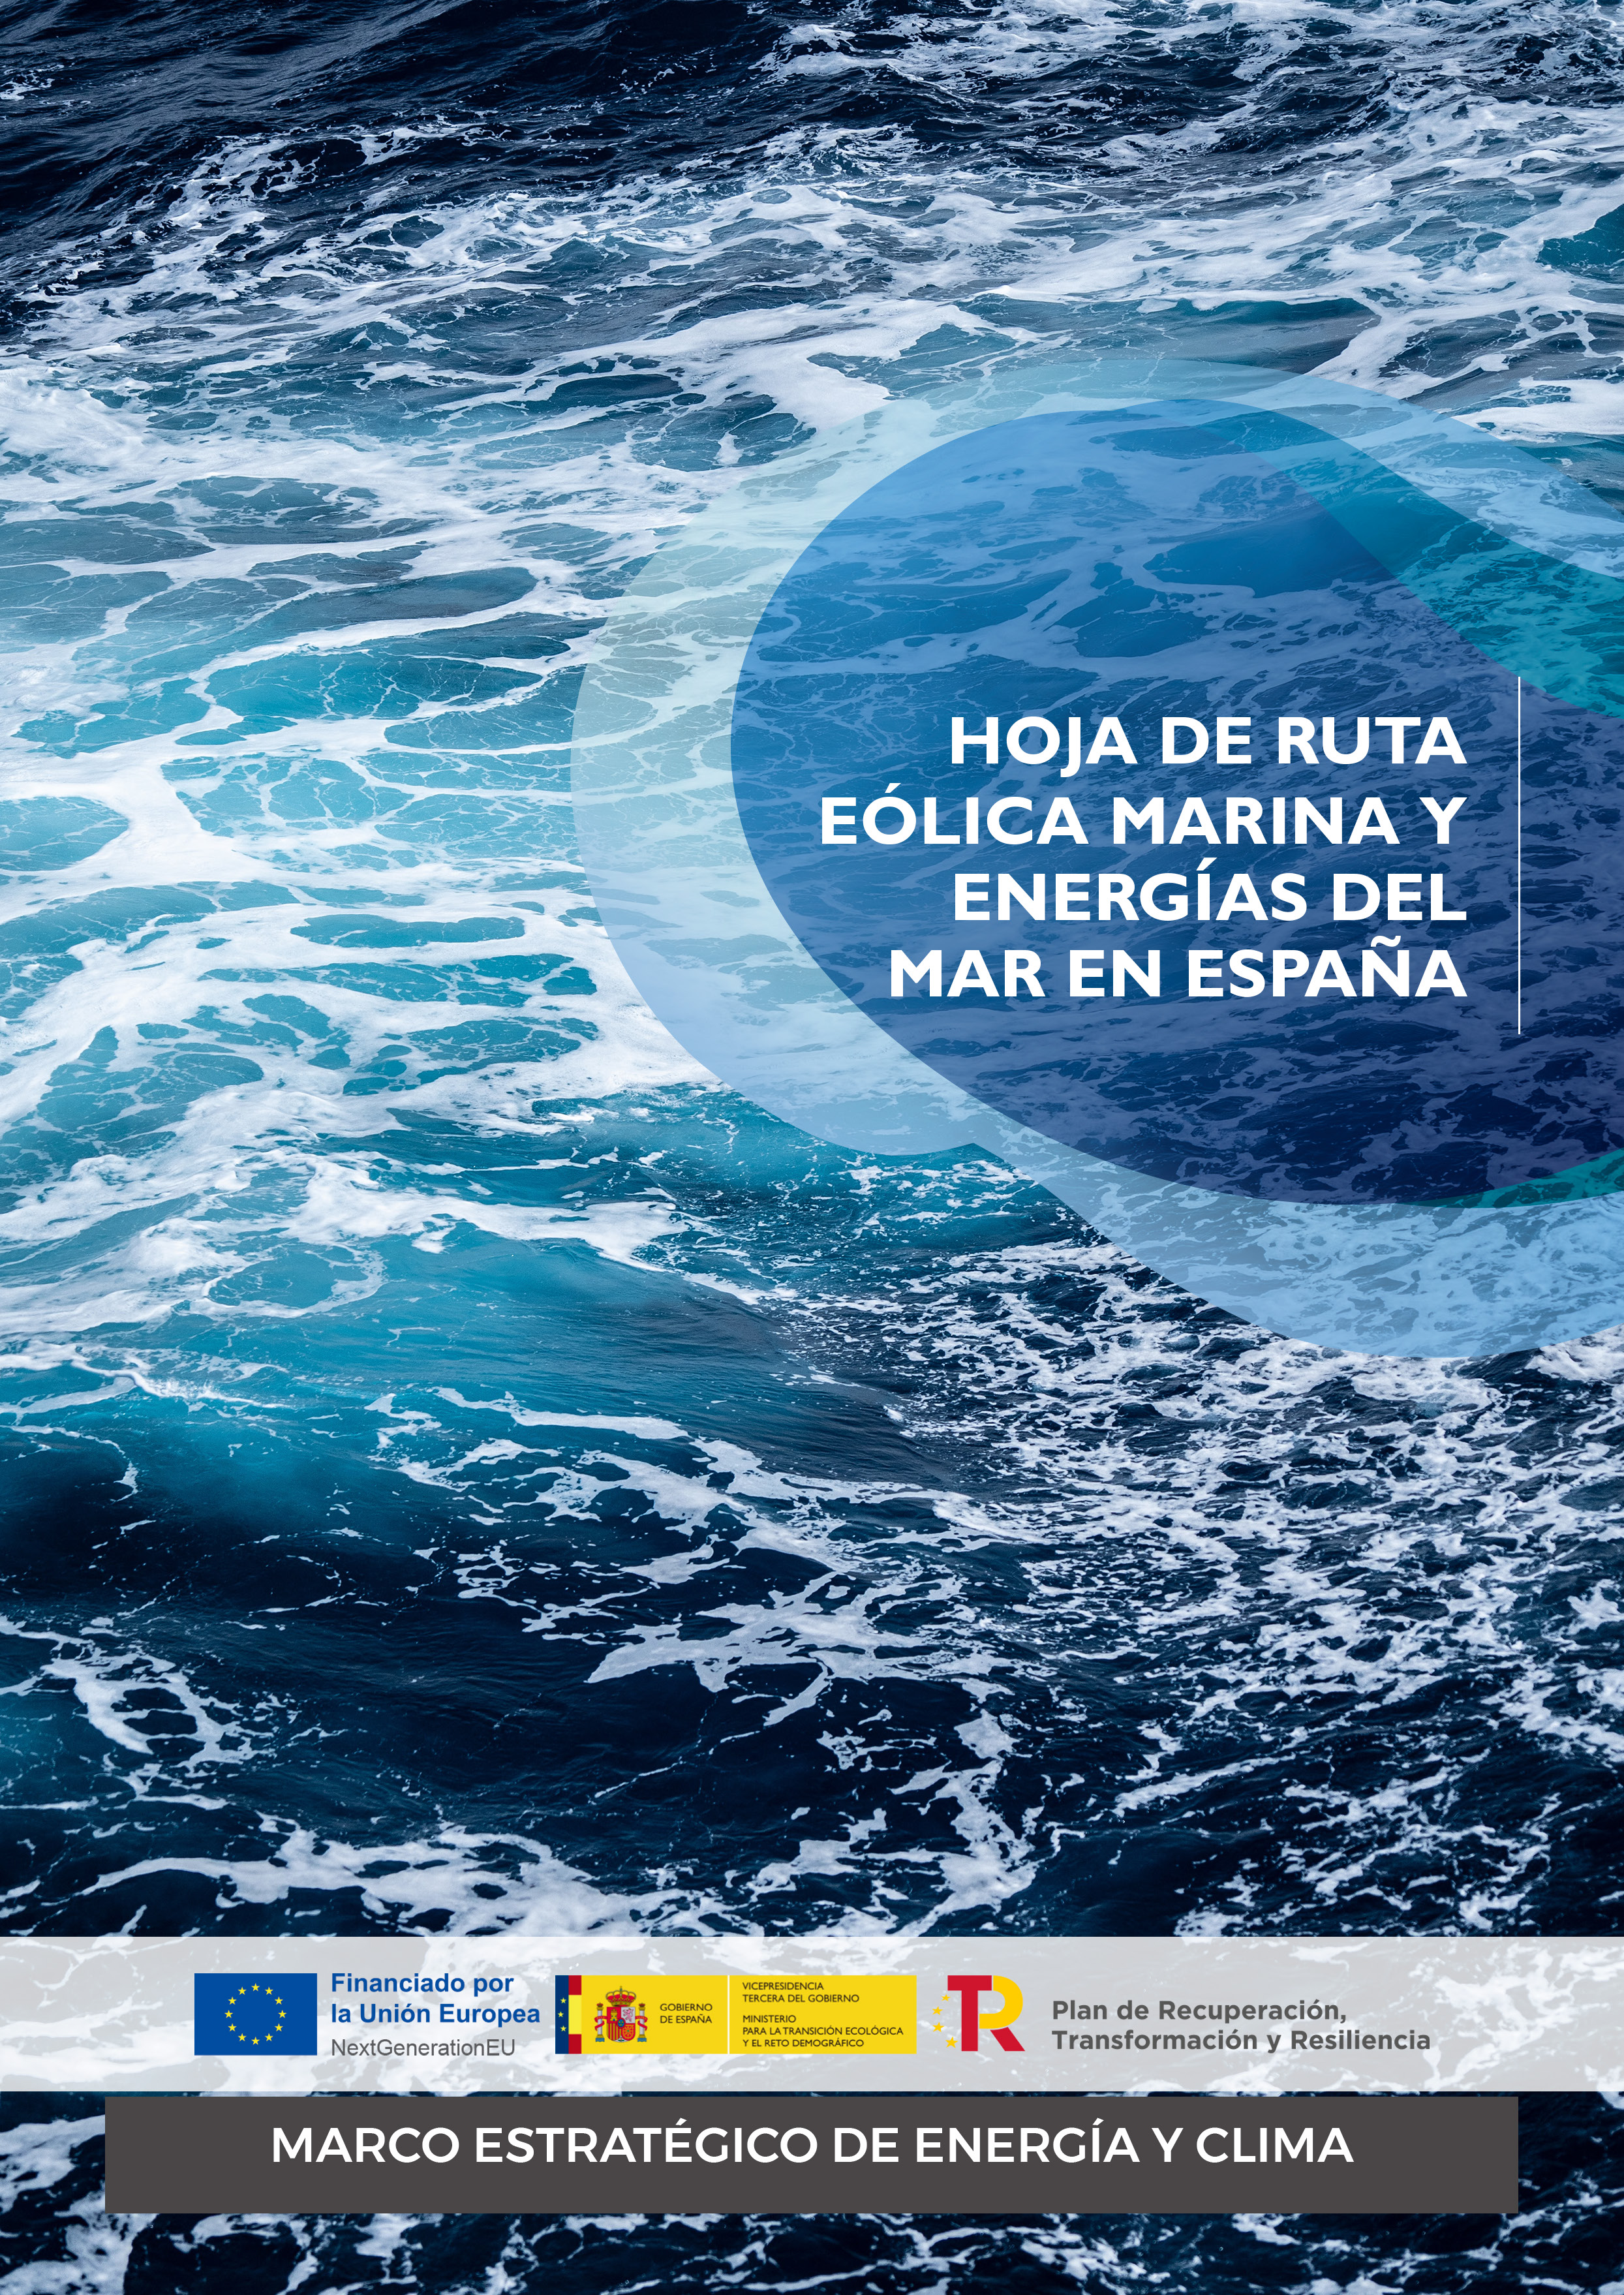 Hoja de Ruta para el desarrollo de la Eólica Marina y de las Energías del Mar en España